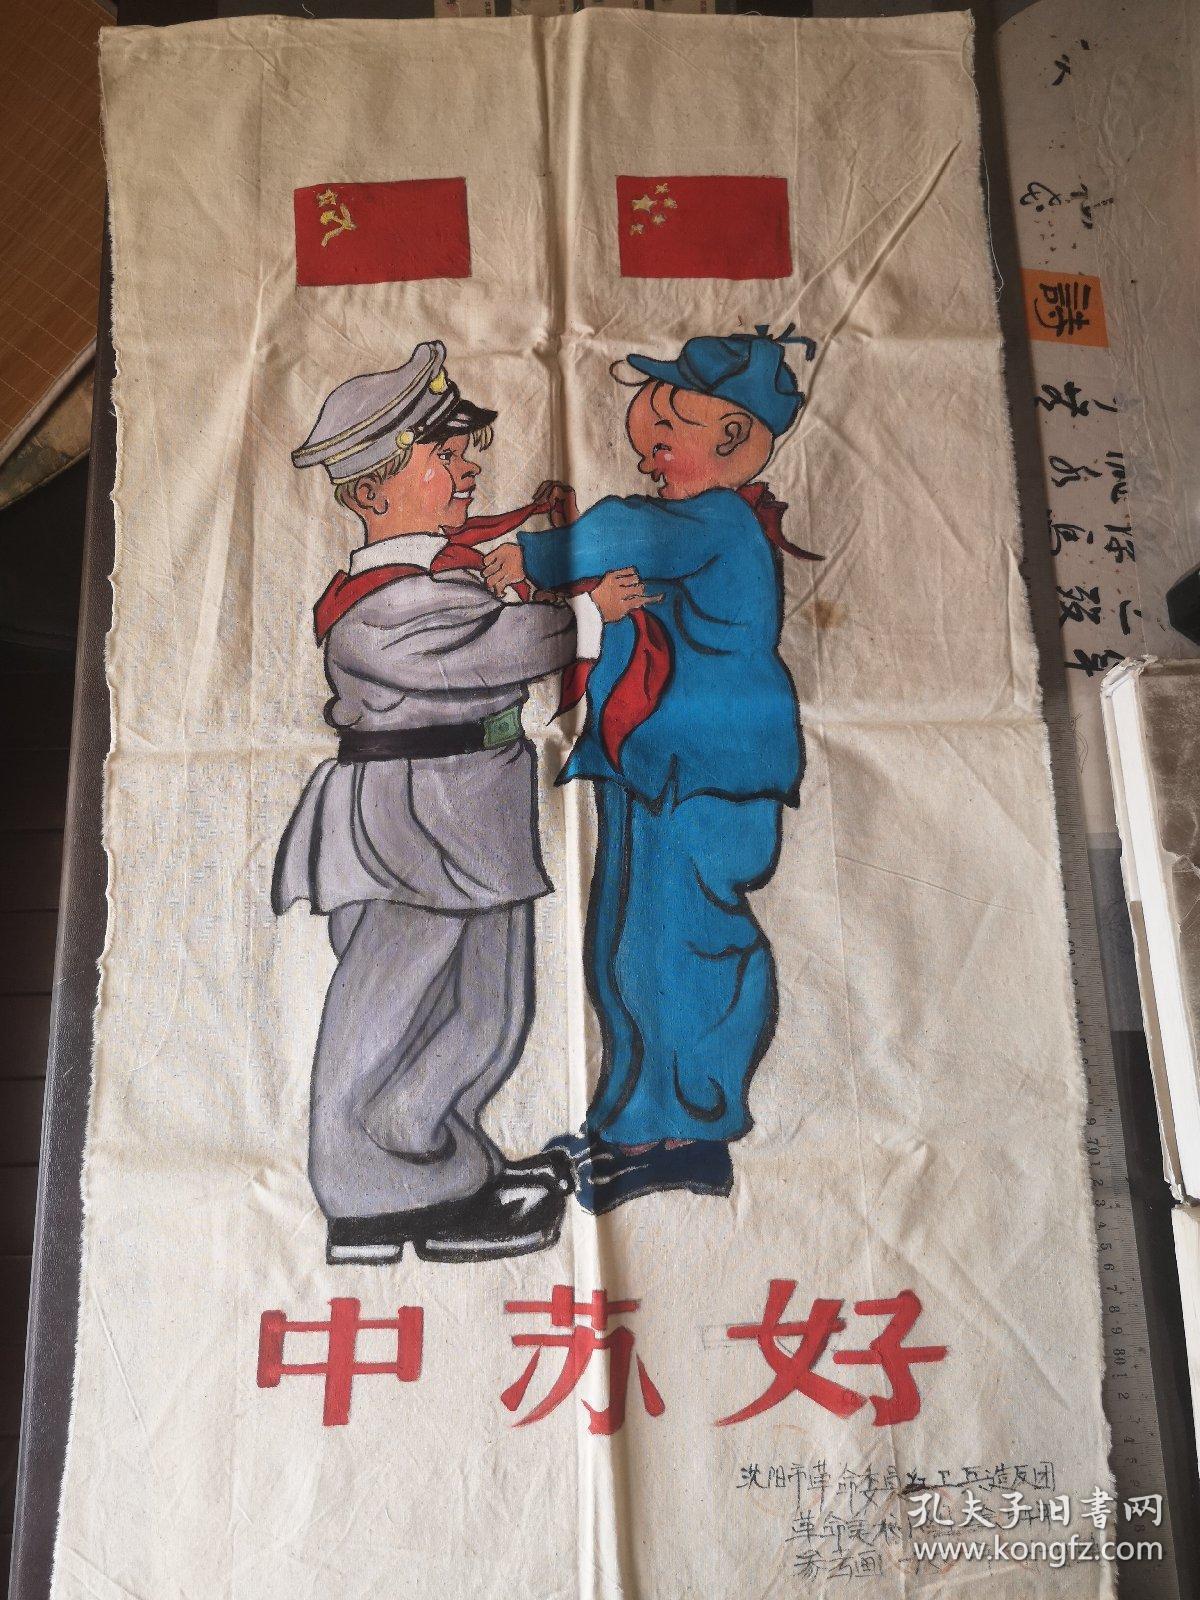 中苏友好时期宣传海报图片